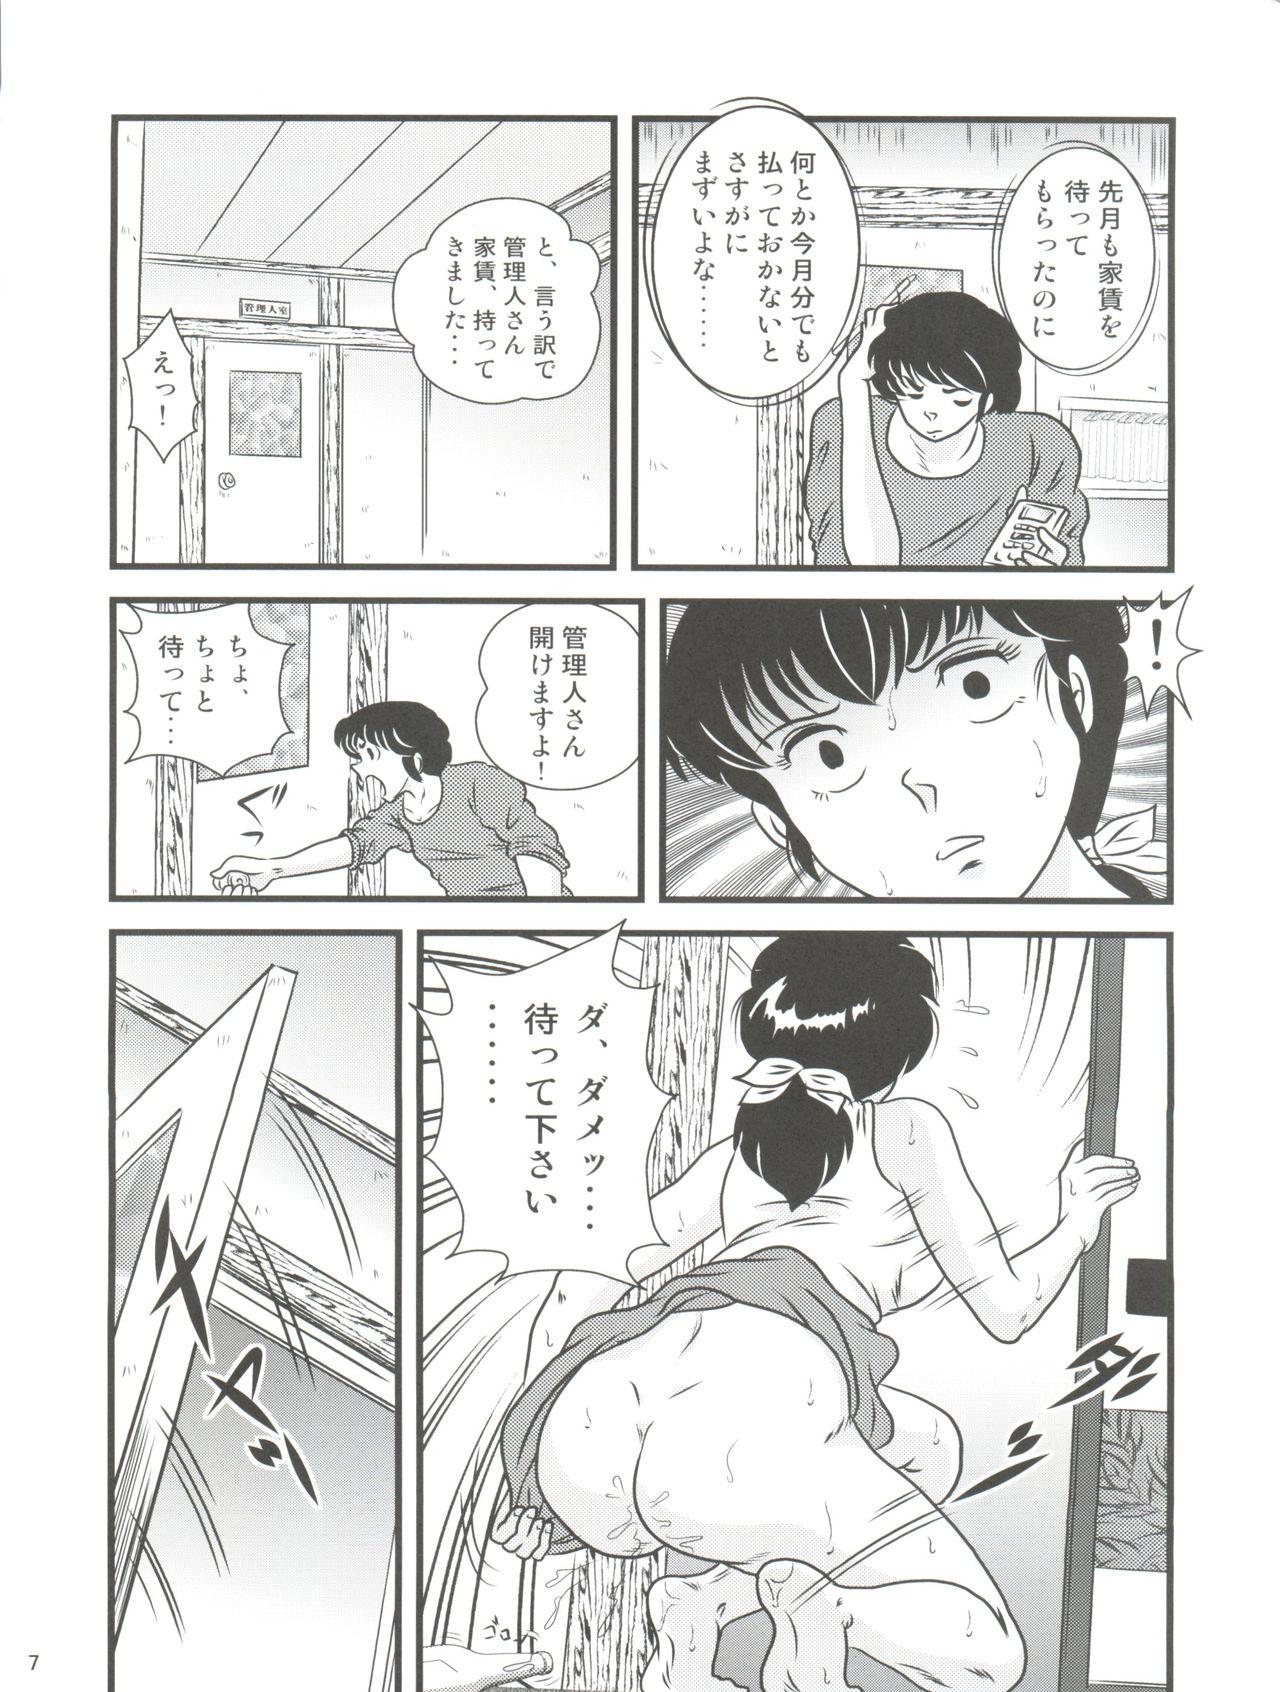 Hotwife Fairy 17 - Maison ikkoku Gay Averagedick - Page 7